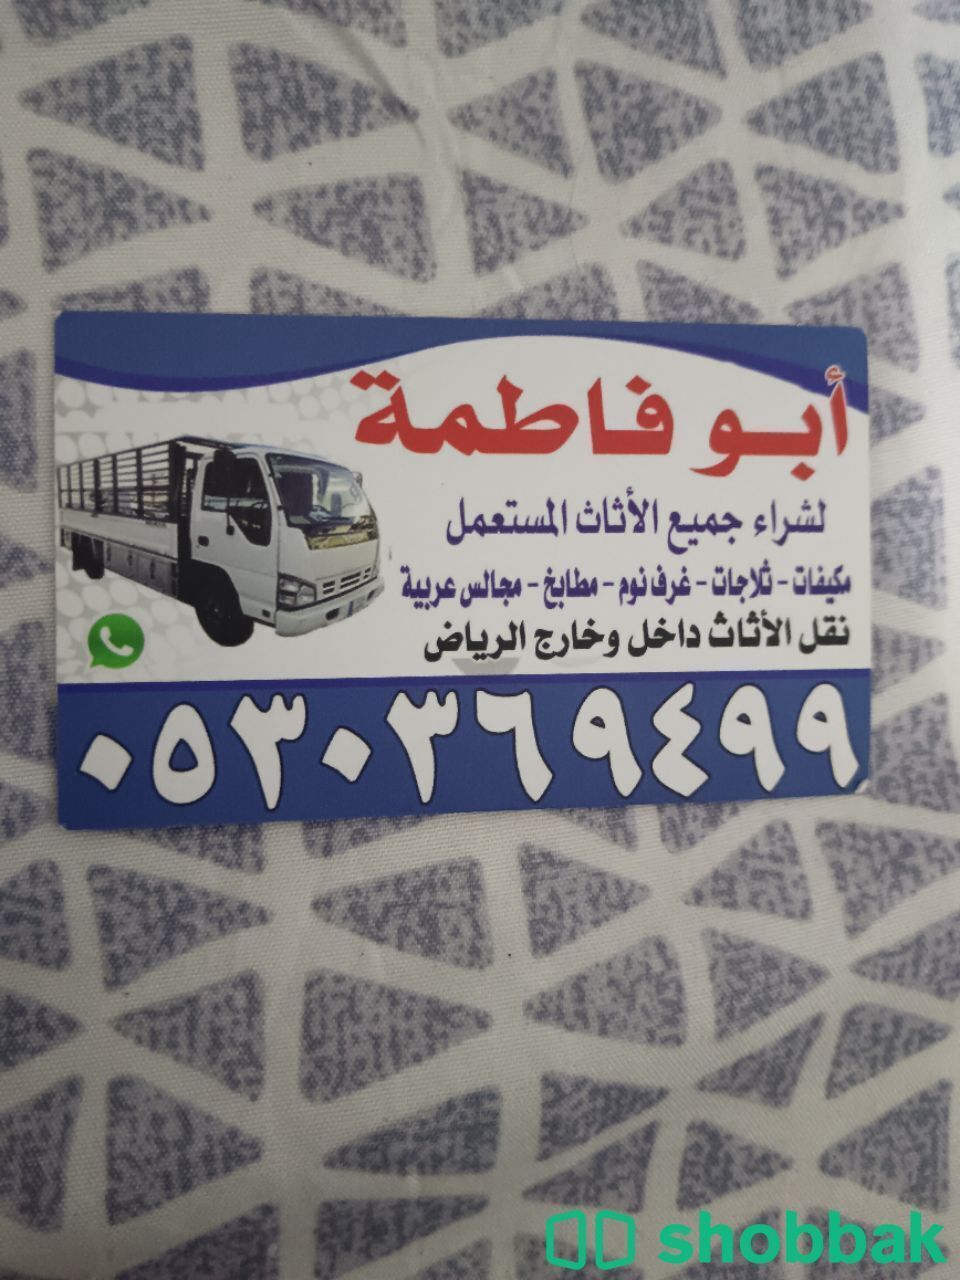 شراء أثاث مستعمل حي النزهة 0530369499  Shobbak Saudi Arabia